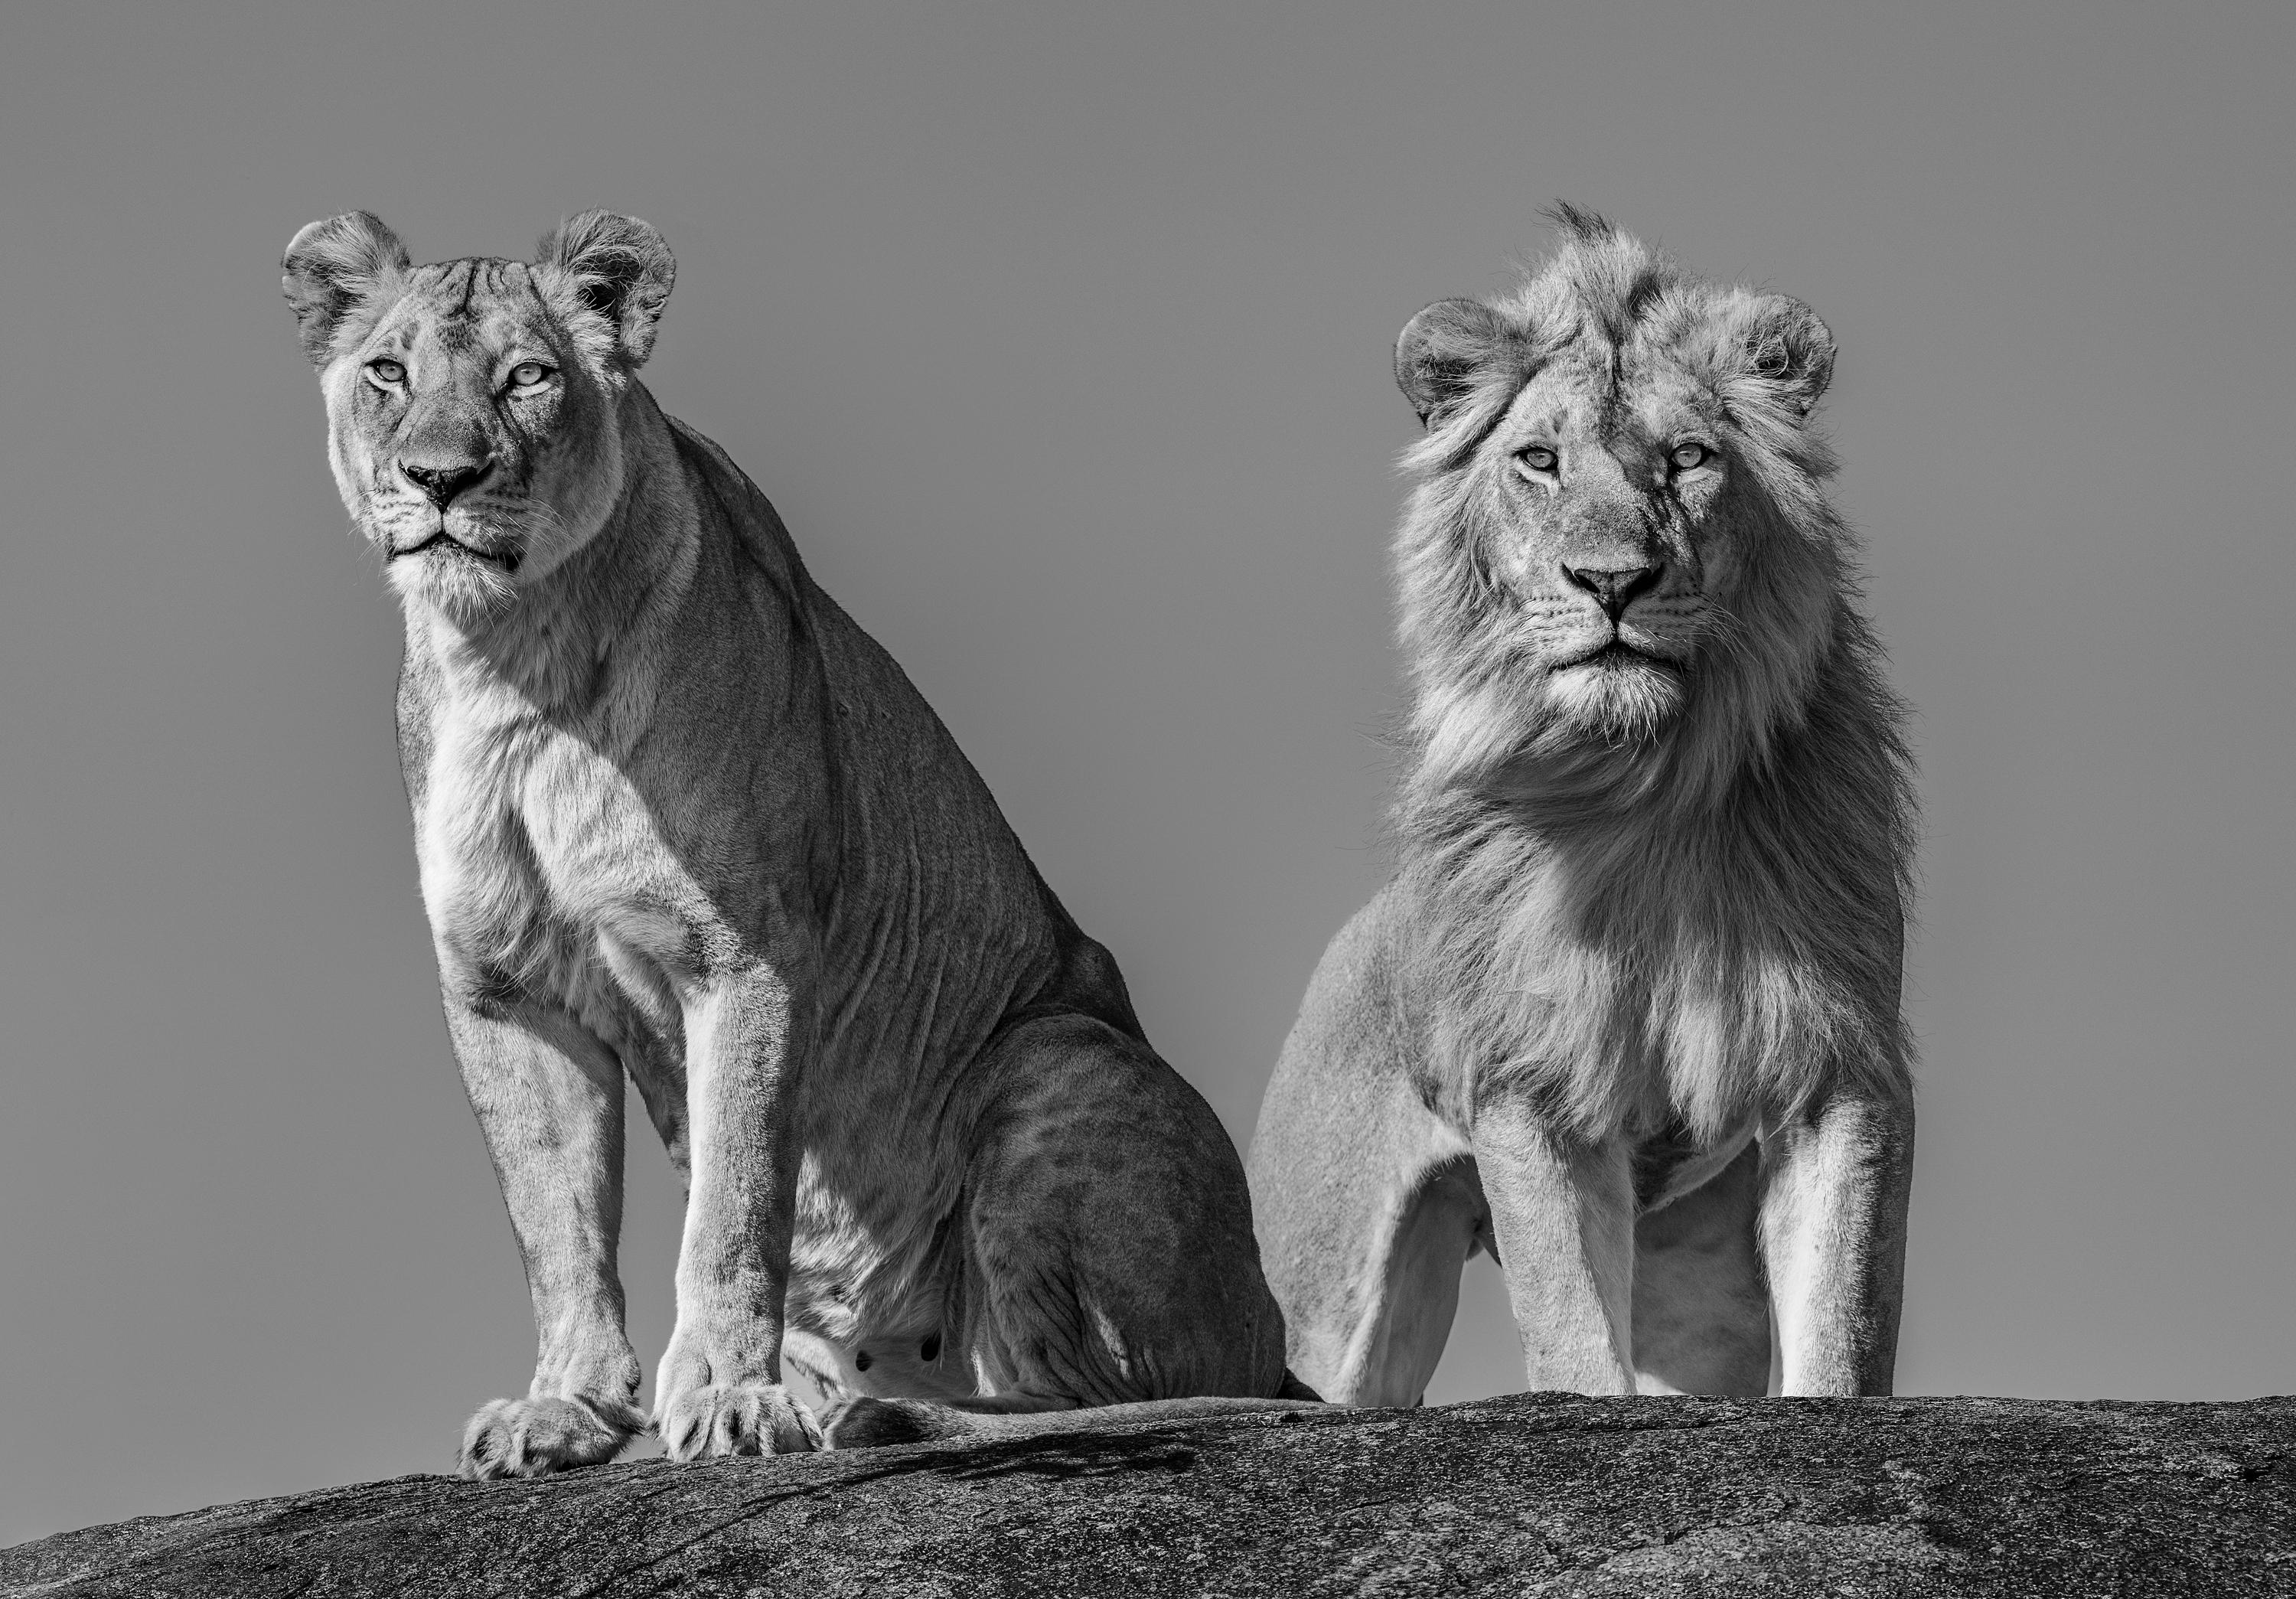 "Die Serengeti ist aus mehreren Gründen mein Lieblingsort zum Fotografieren von Löwen. Erstens ist die Serengeti nach wie vor eine Hochburg für Löwen mit etwa 3.000 Tieren. Die Serengeti ist auch die Heimat einiger der beeindruckendsten Löwen